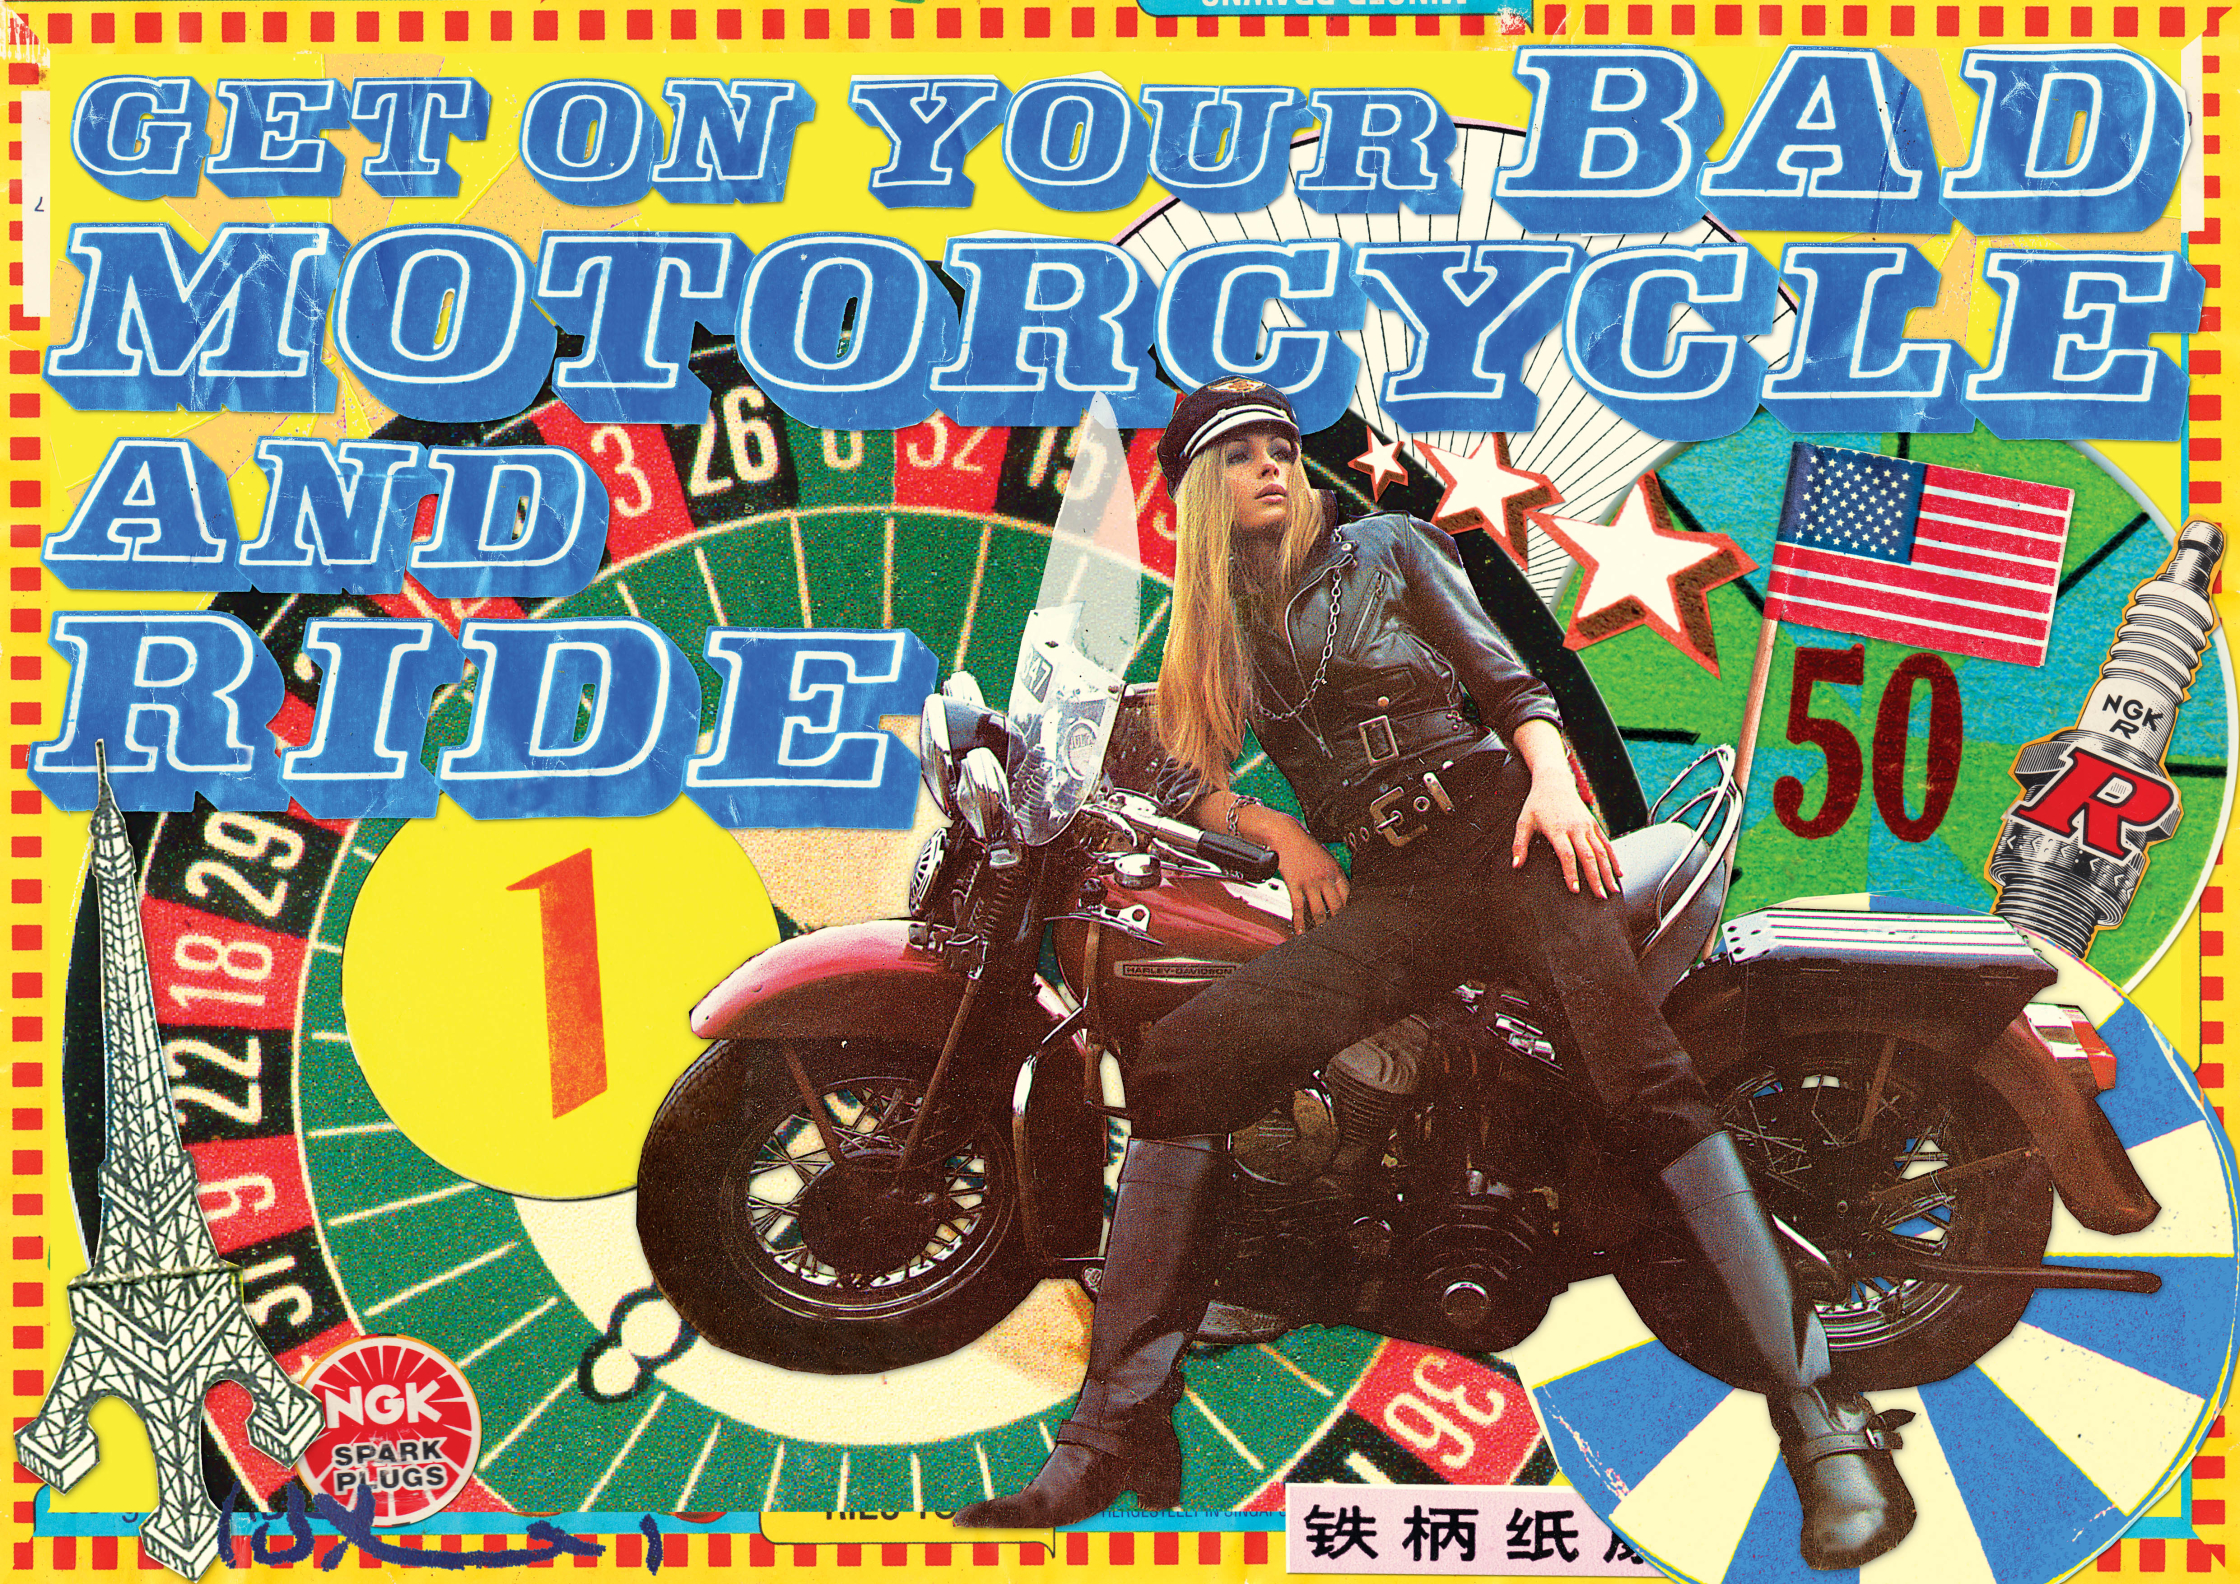 bad motorcycle web.jpg